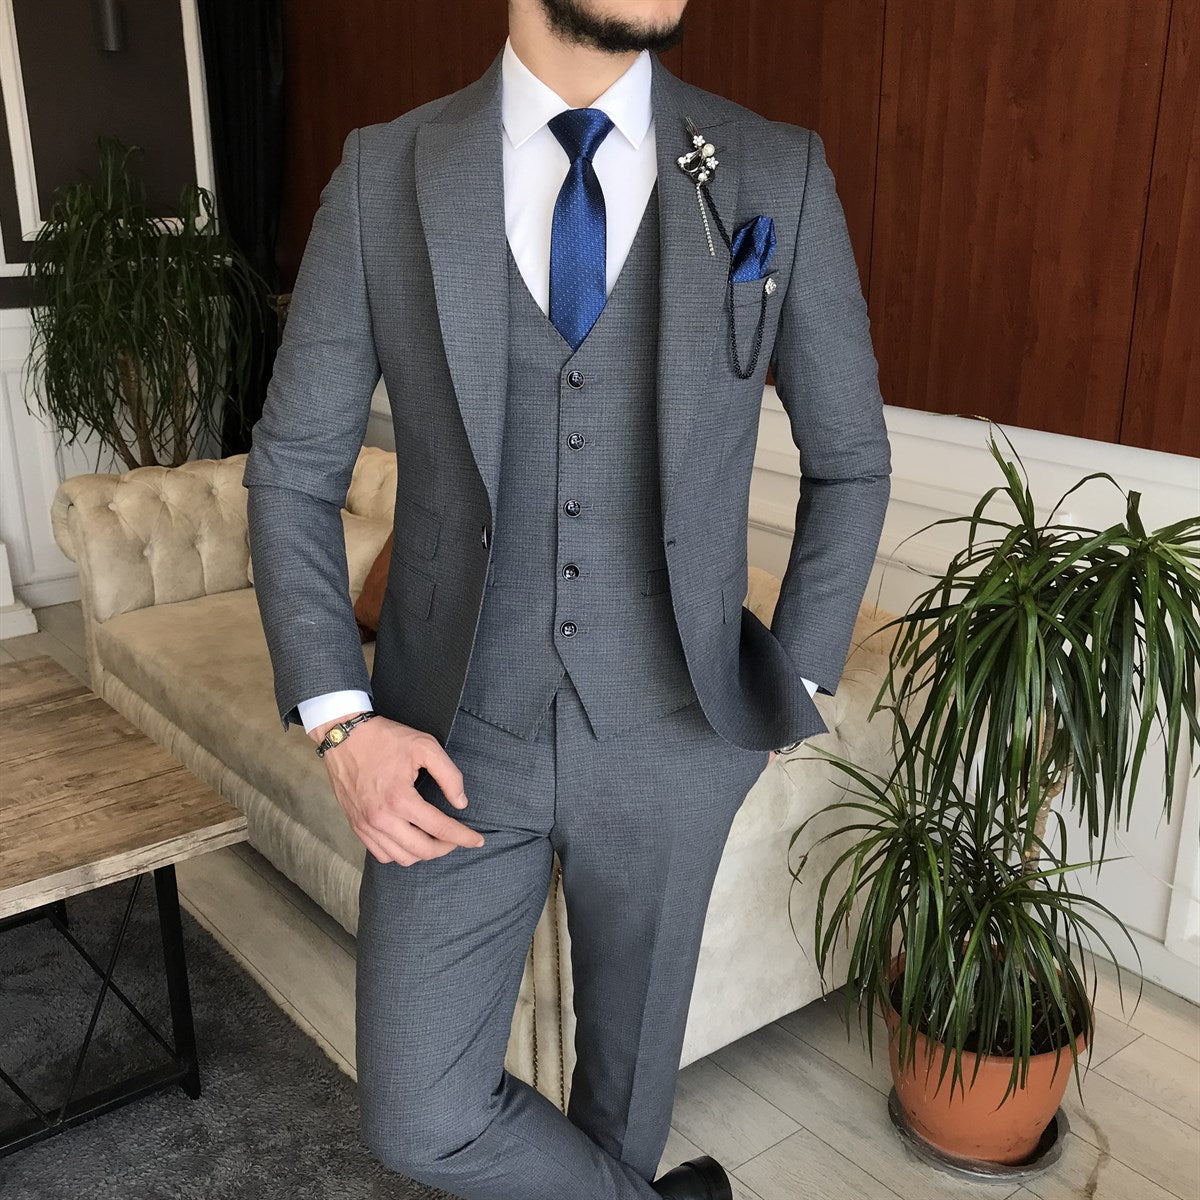 Italian Style Men Slim Fit Suit: Jacket + Vest + Pants - Gray Color